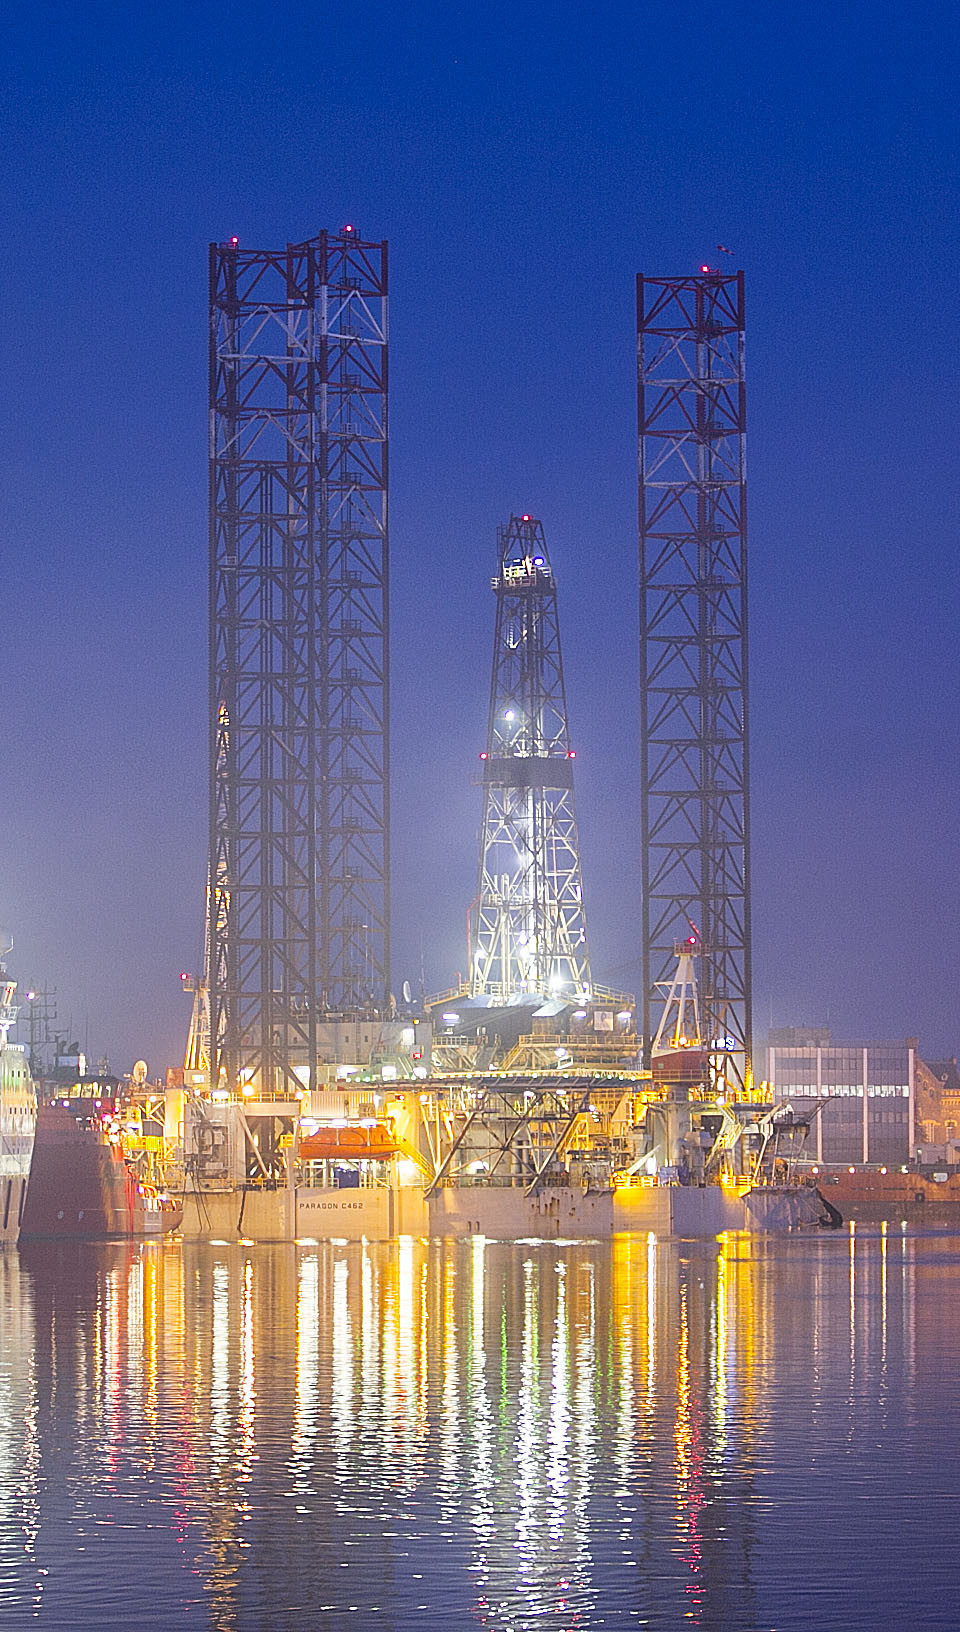 PRESS RELEASE Drilling platform towed into Port of Den Helder after twenty years